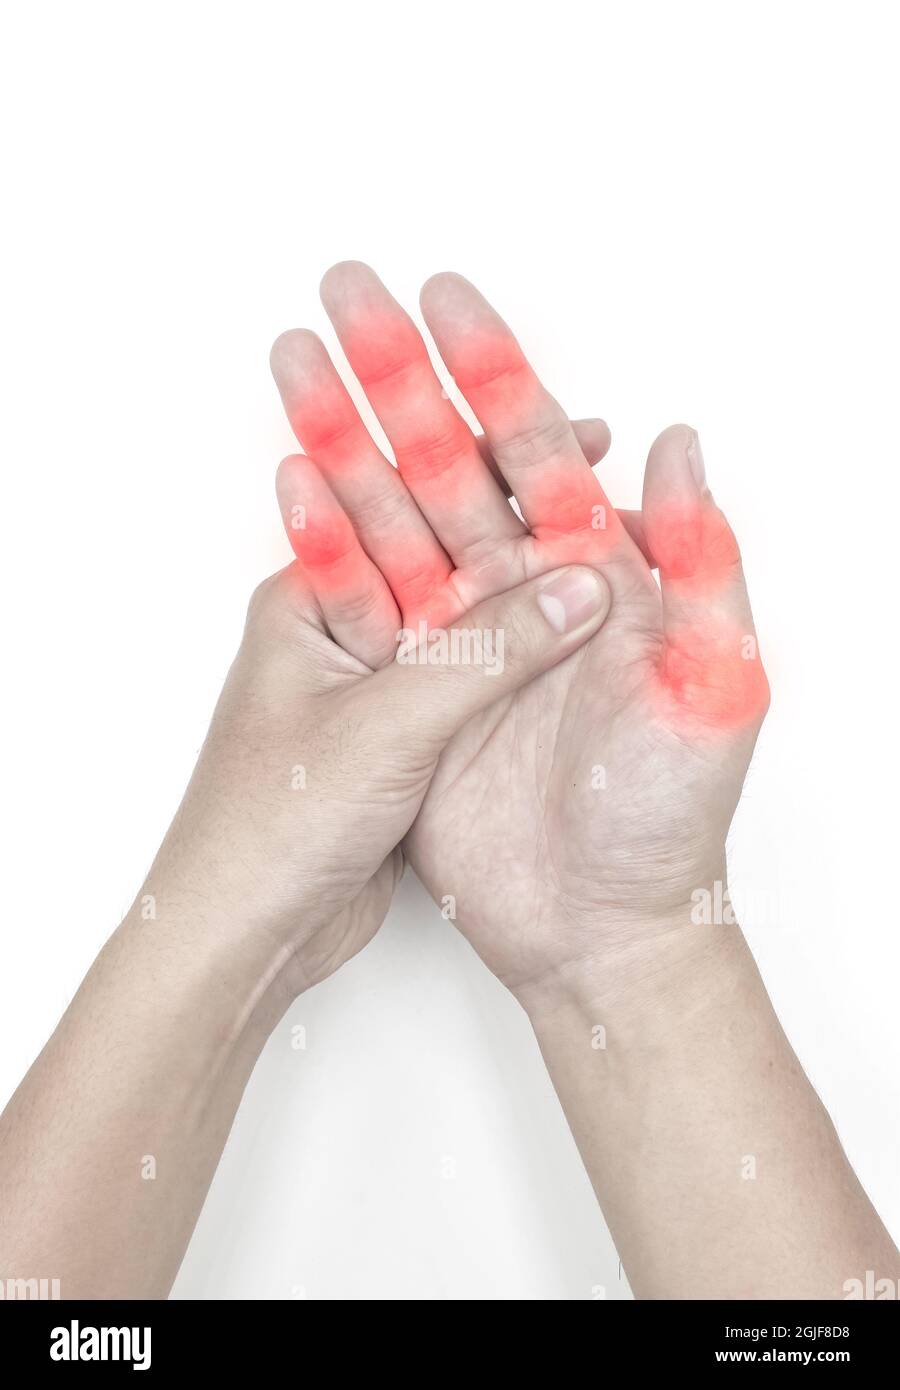 Inflammation au niveau des articulations du doigt du jeune homme asiatique.  Concept de douleurs articulaires des mains. Isolé sur blanc Photo Stock -  Alamy